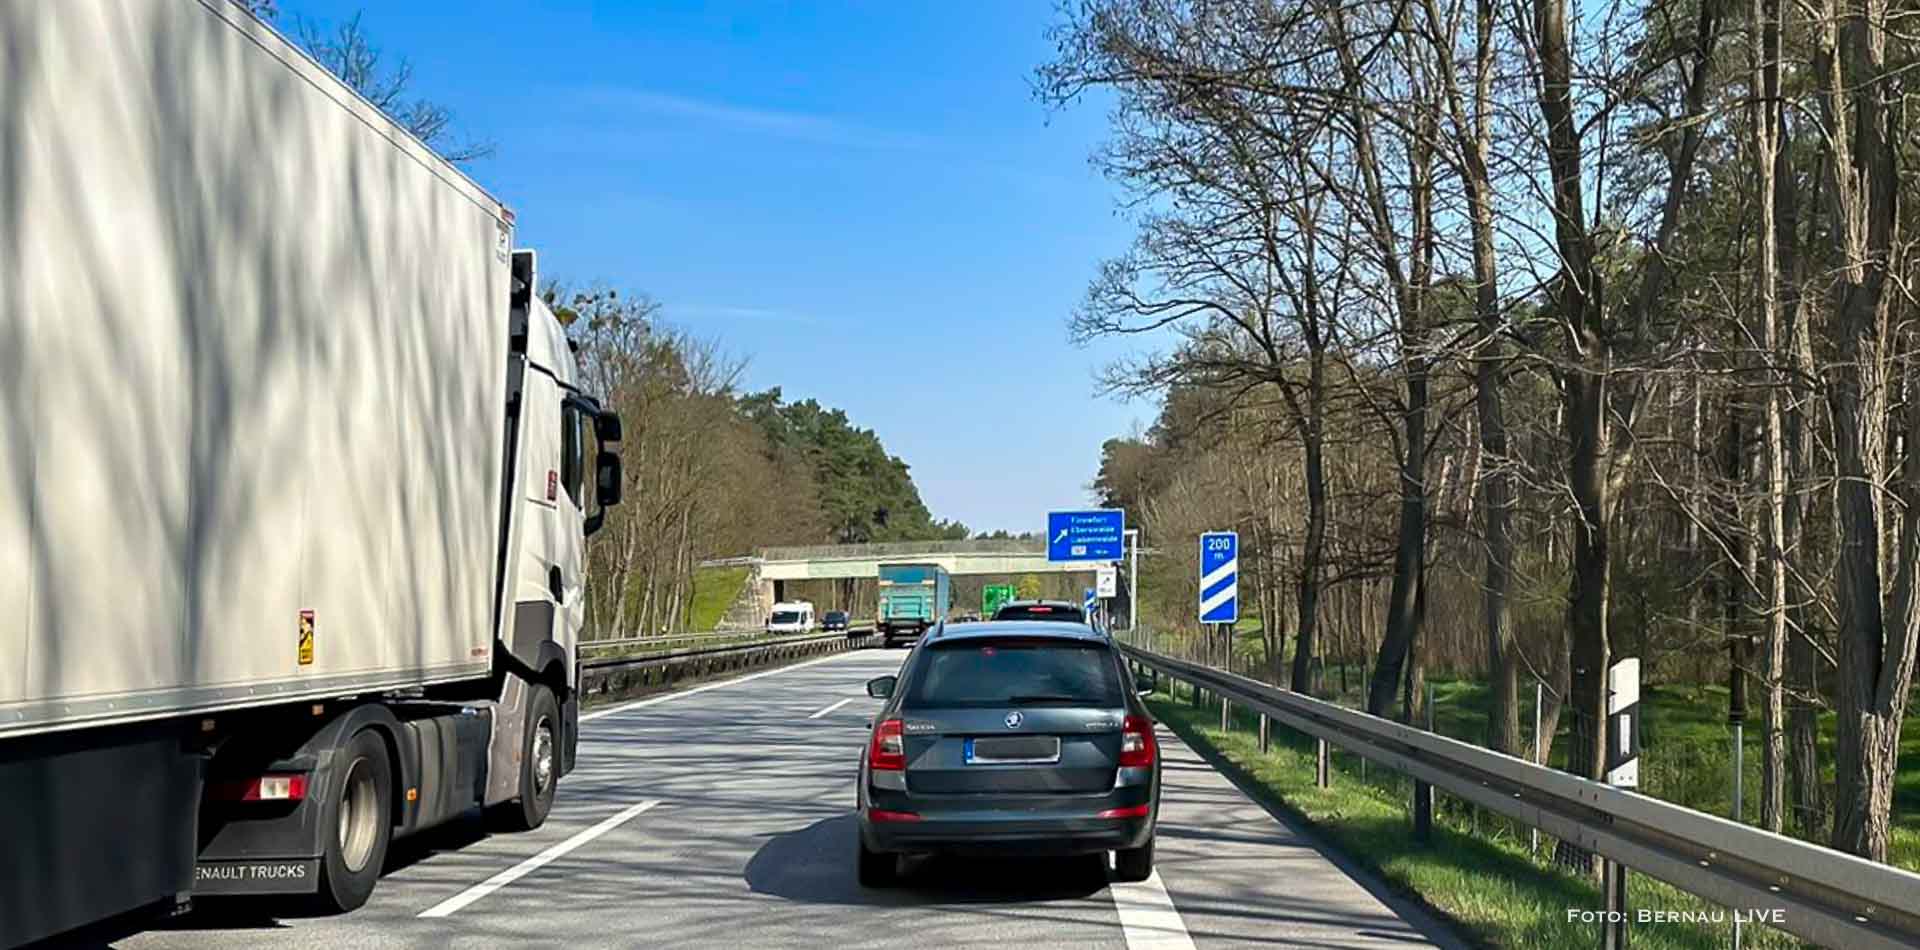 Verkehrshinweis: Stau auf der A11 zwischen Lanke und Finowfurt